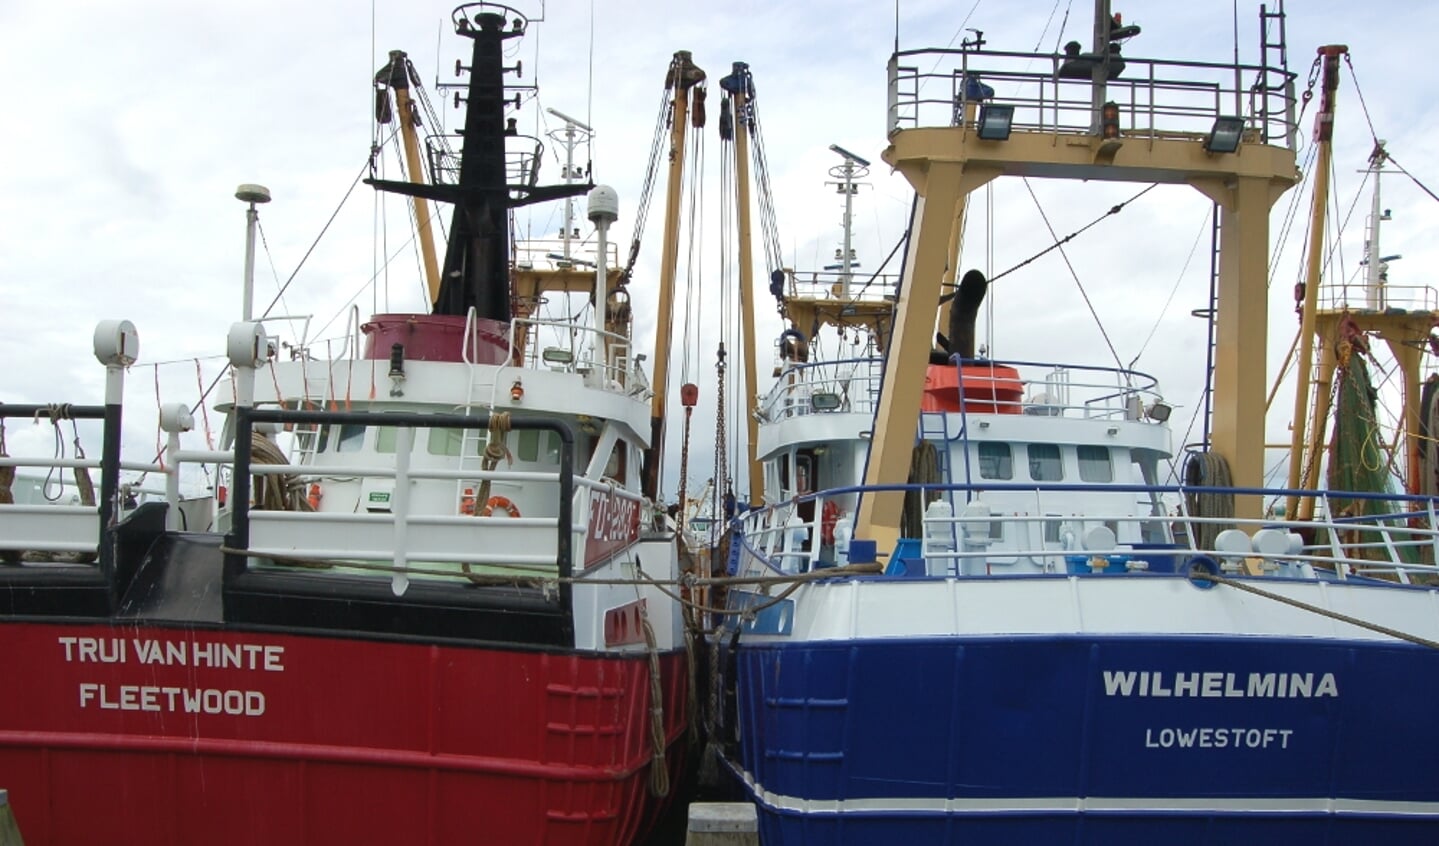  Het naderend vertrek van het Verenigd Koninkrijk uit de EU benauwt de visserijsector in Nederland. Ook voor Nederlandse bedrijven met Britse trawlers of kotters gaat de Brexit gepaard met onzekerheid, zorgen en vooral veel vragen.